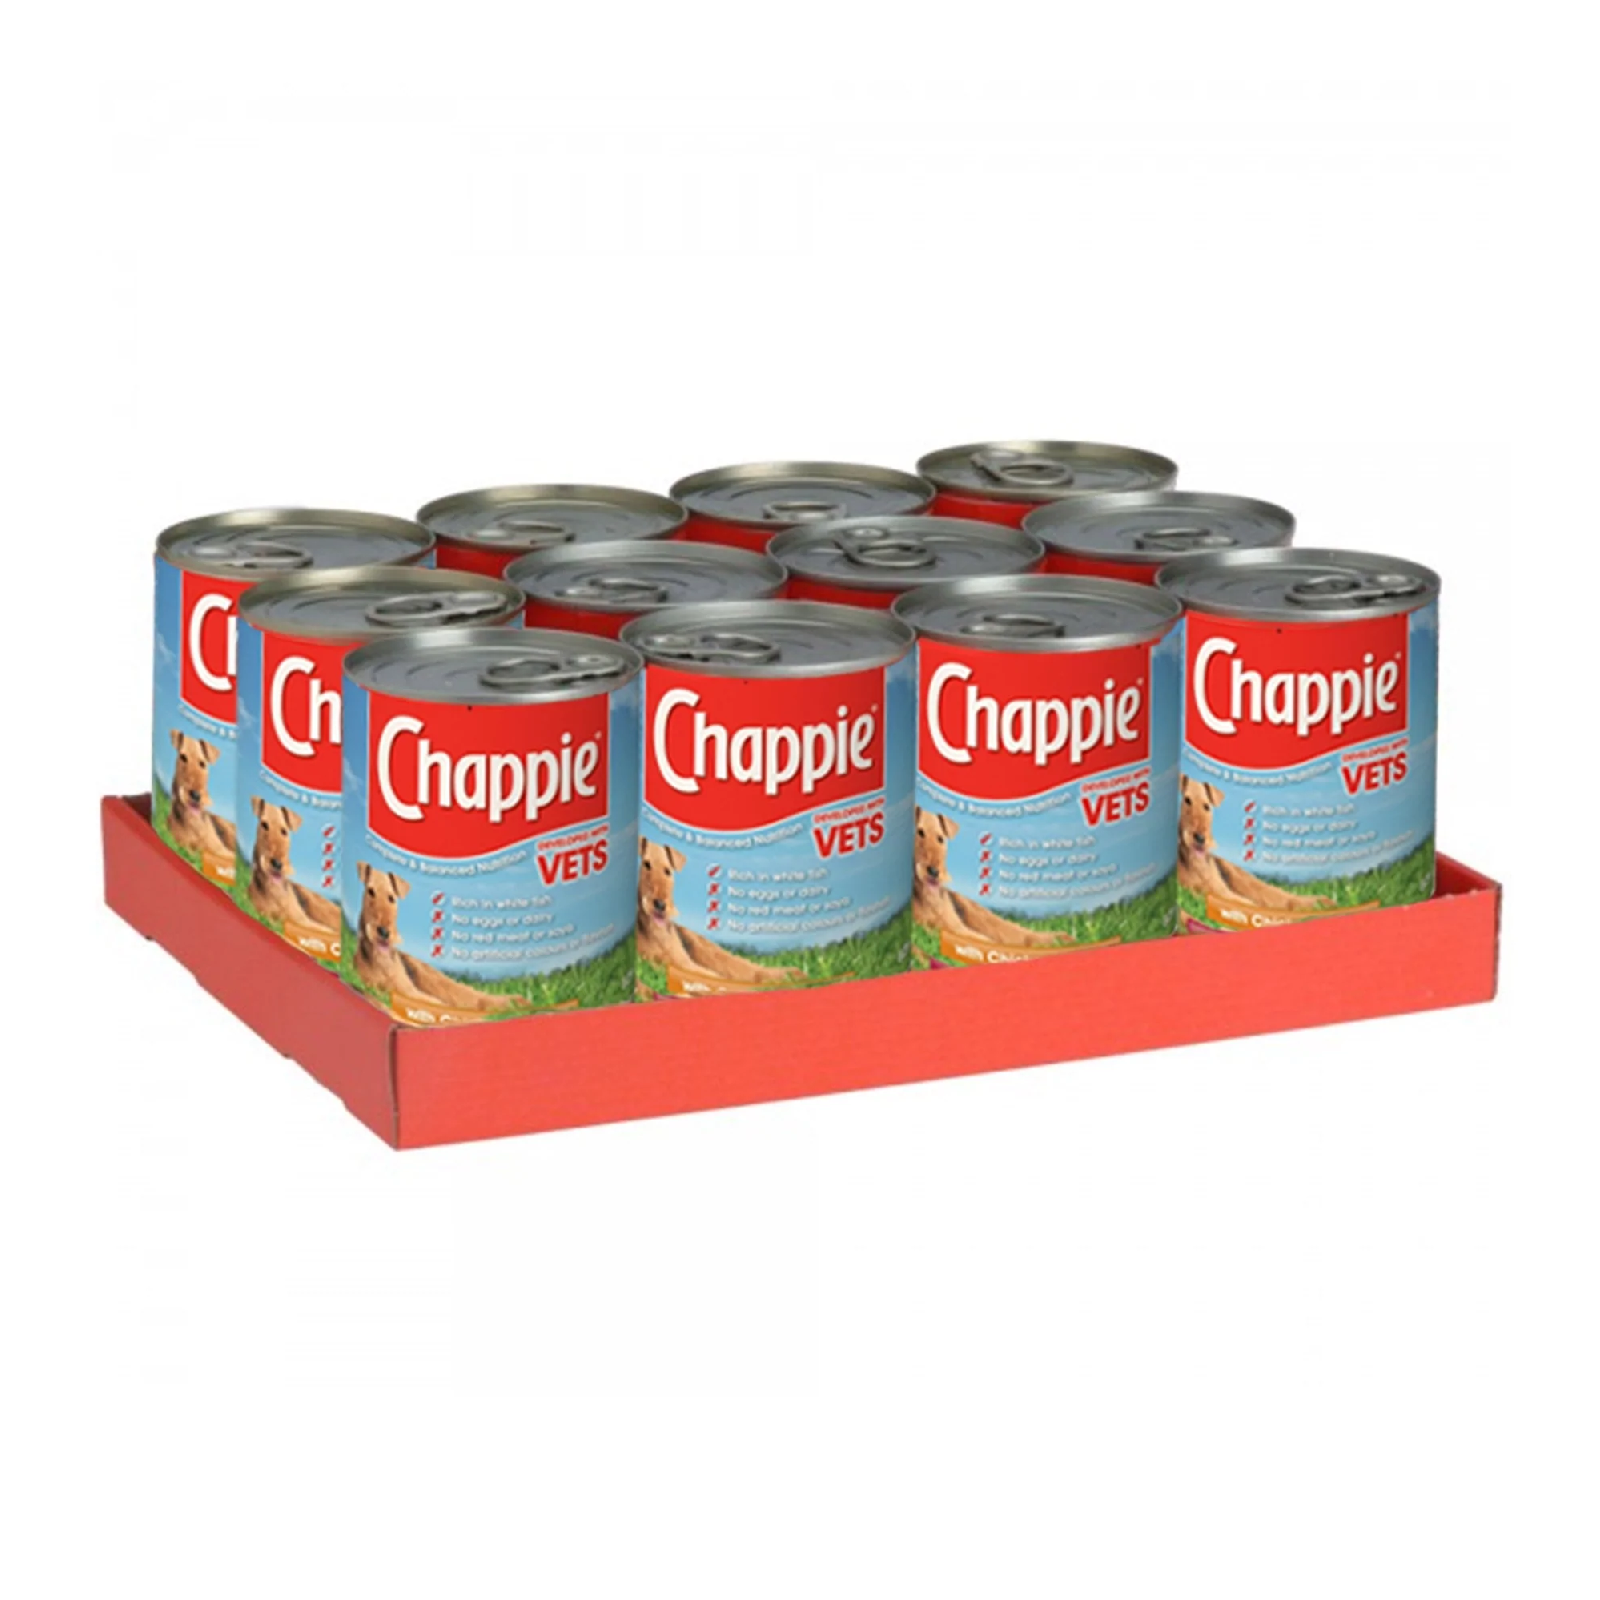 Chappie Original Tins 12 x 412g